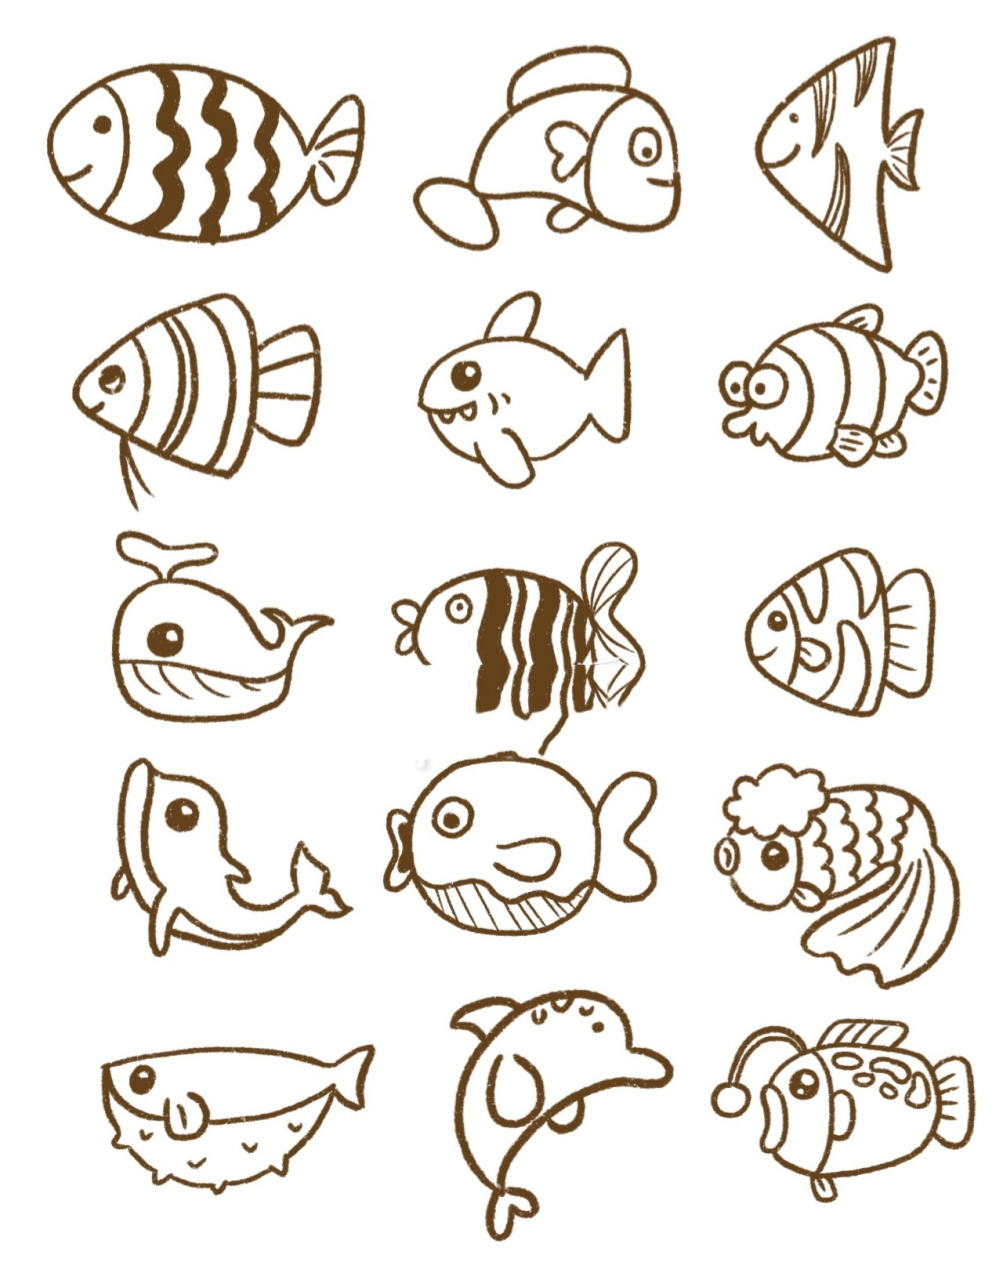 海洋中的鱼 简笔画图片